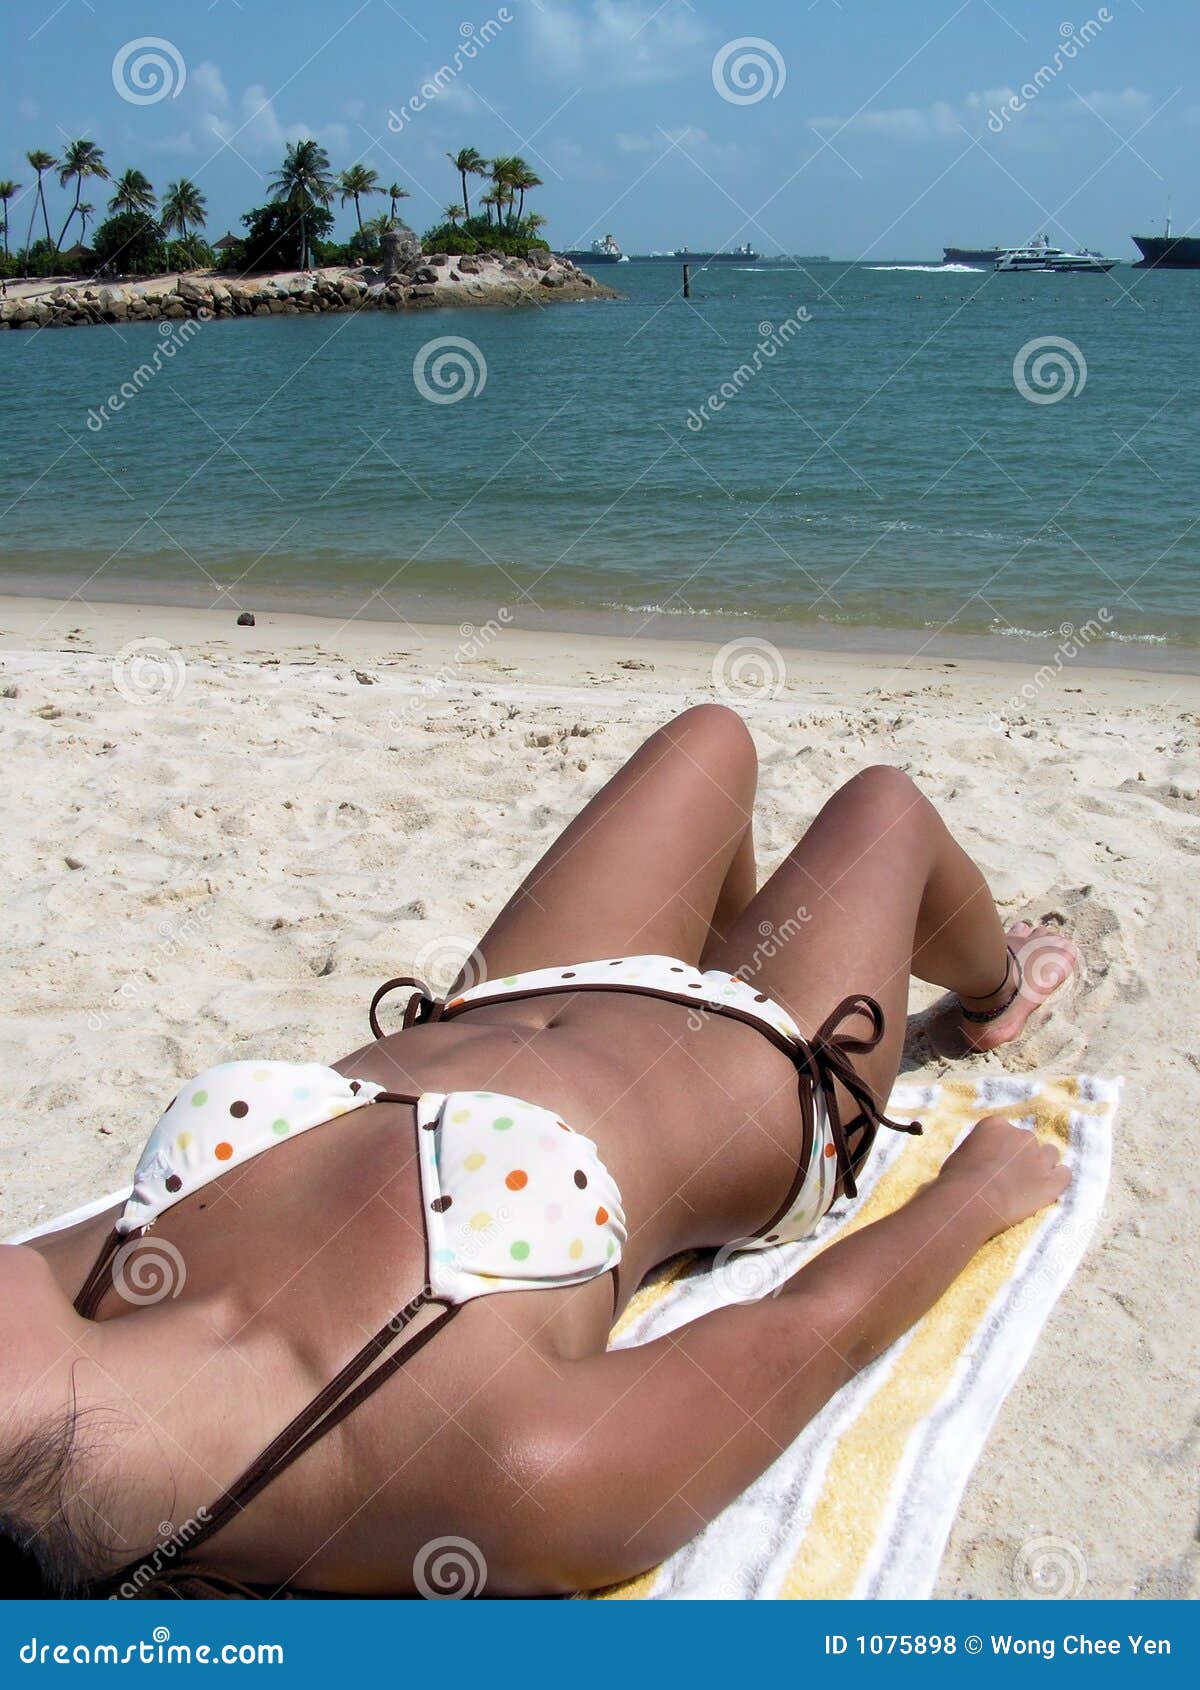 Babe on a beach